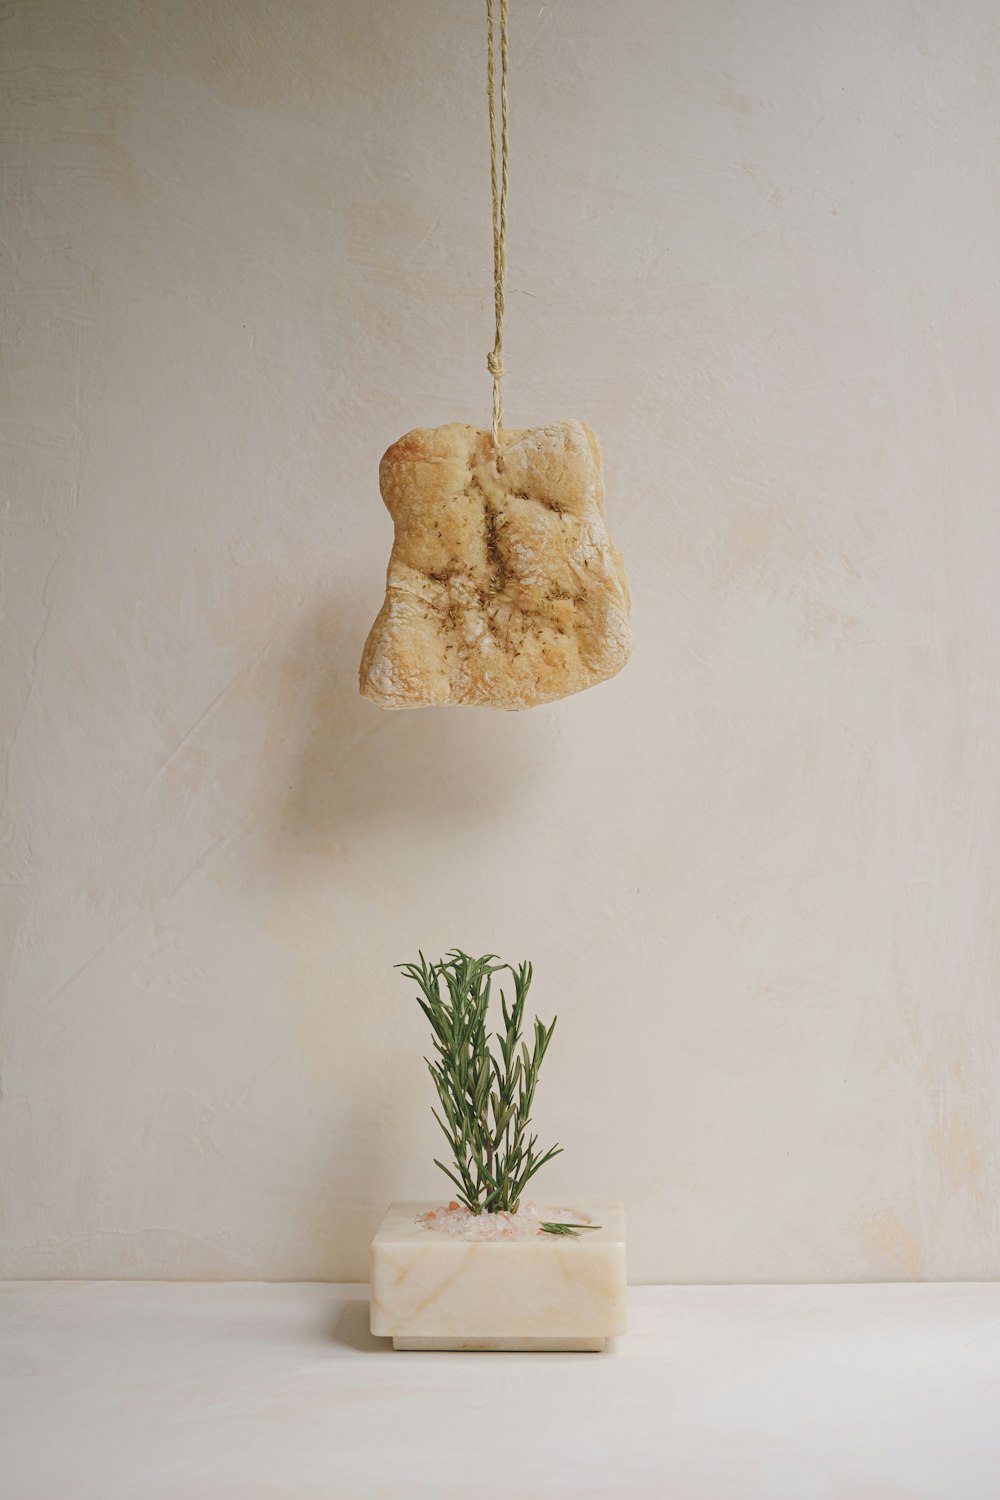 ein Stück Brot, das an einem Seil neben einer Pflanze hängt